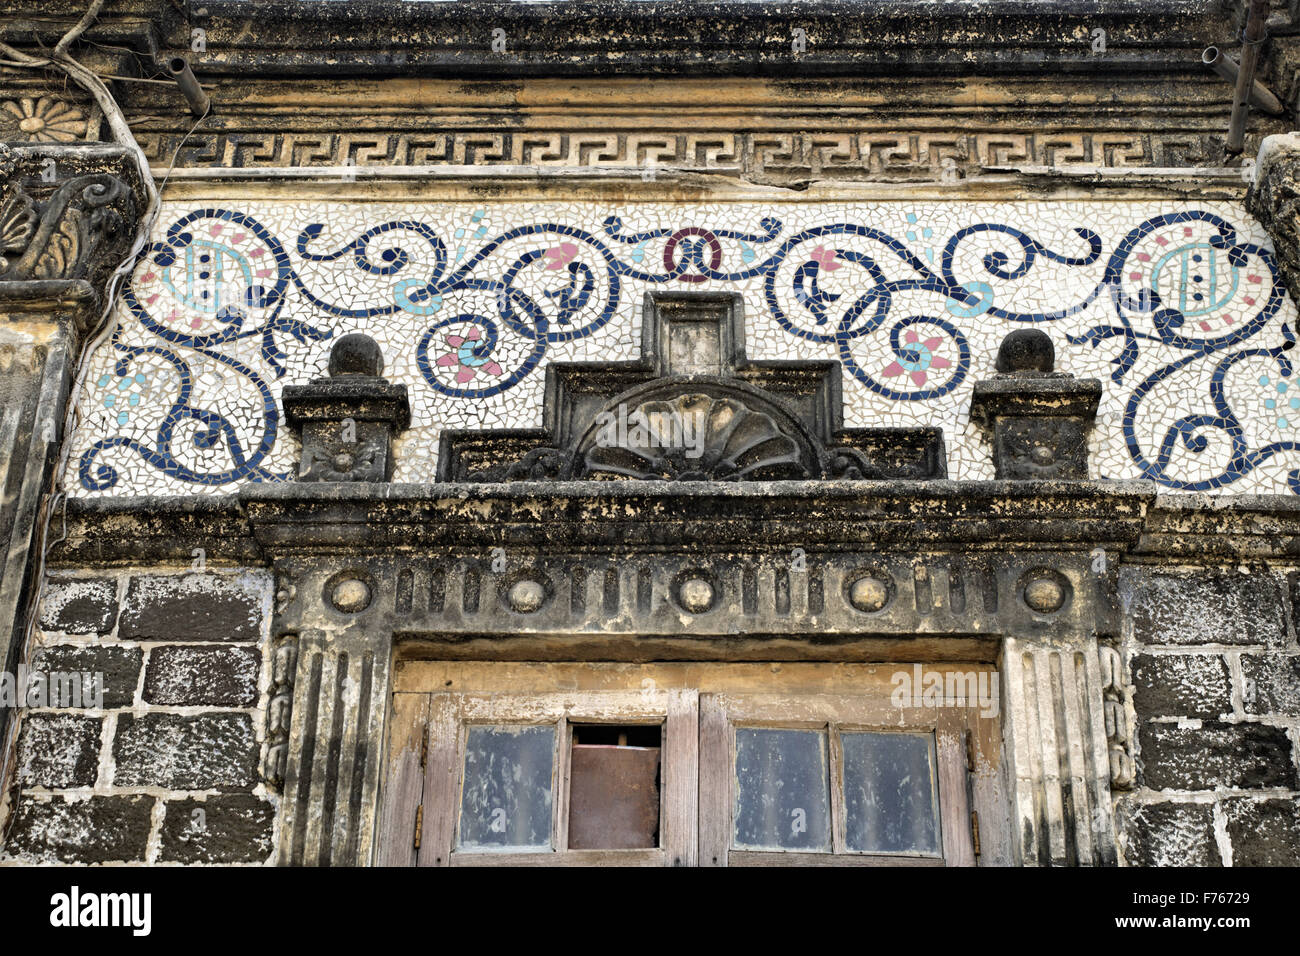 Casa antigua, piezas de arte de azulejos astillados, jamnagar, gujarat, india, asia Foto de stock